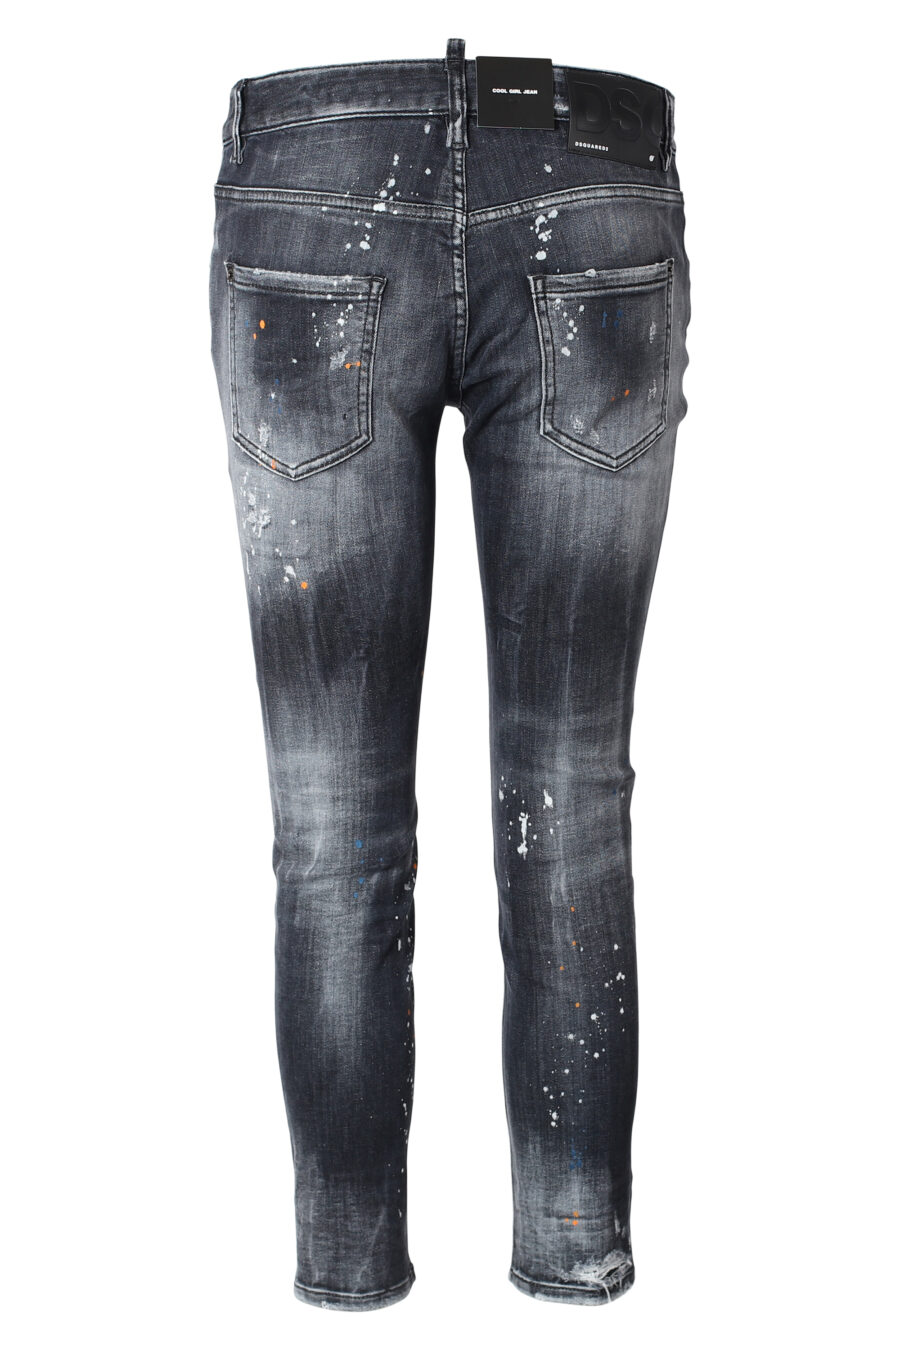 Jeans preto "cool girl" com pintura multicolorida - IMG 9859